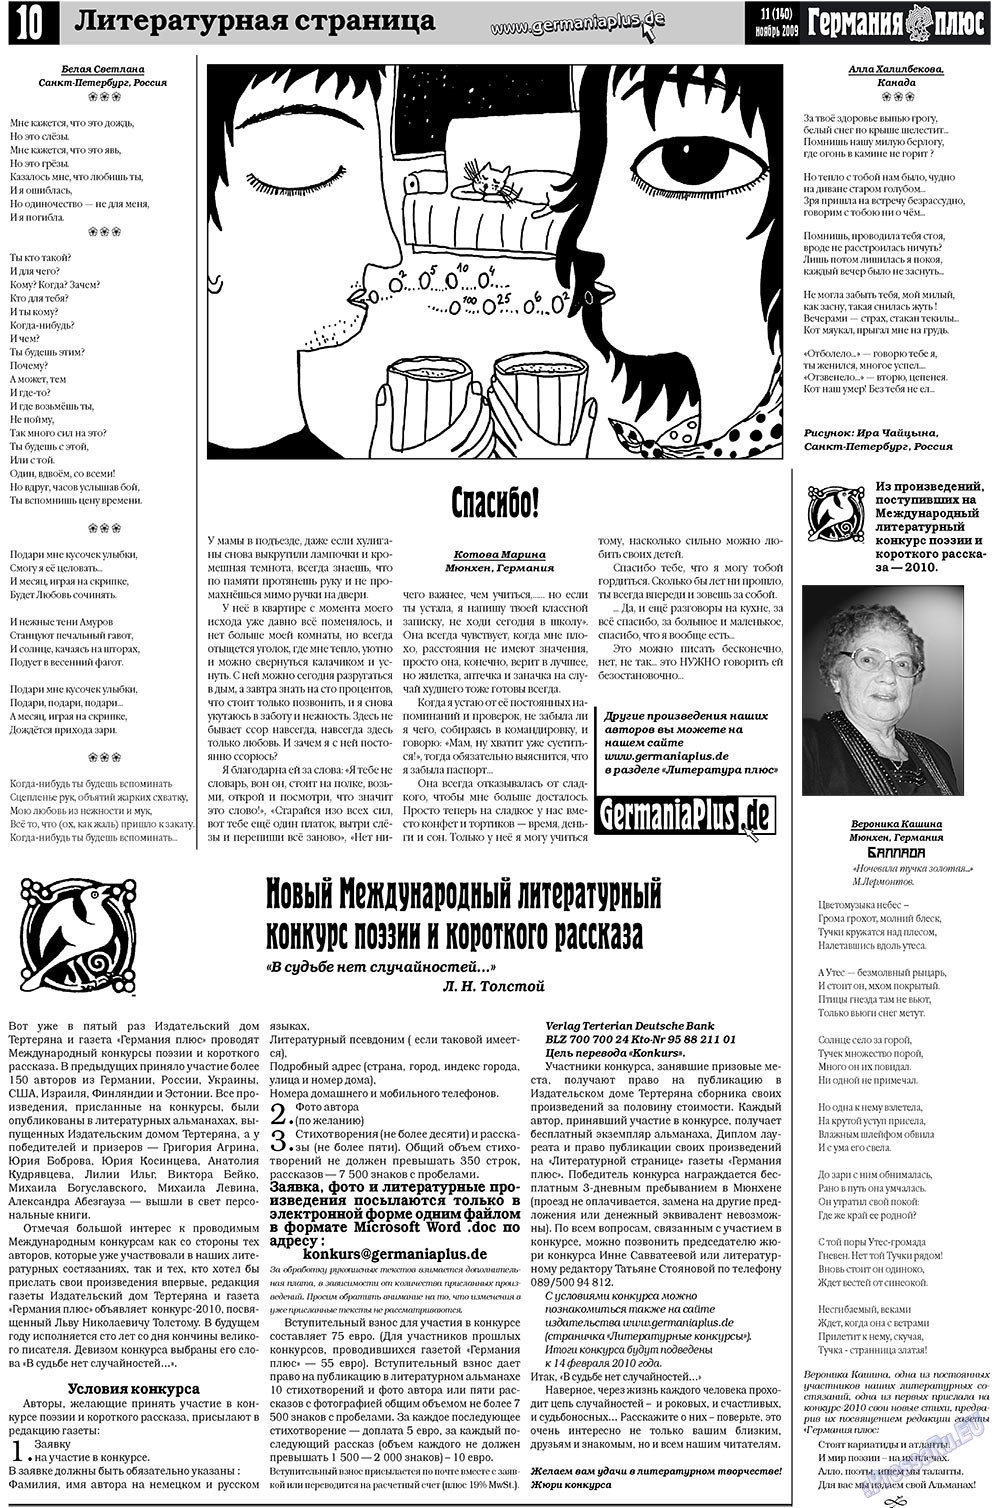 Германия плюс, газета. 2009 №11 стр.10